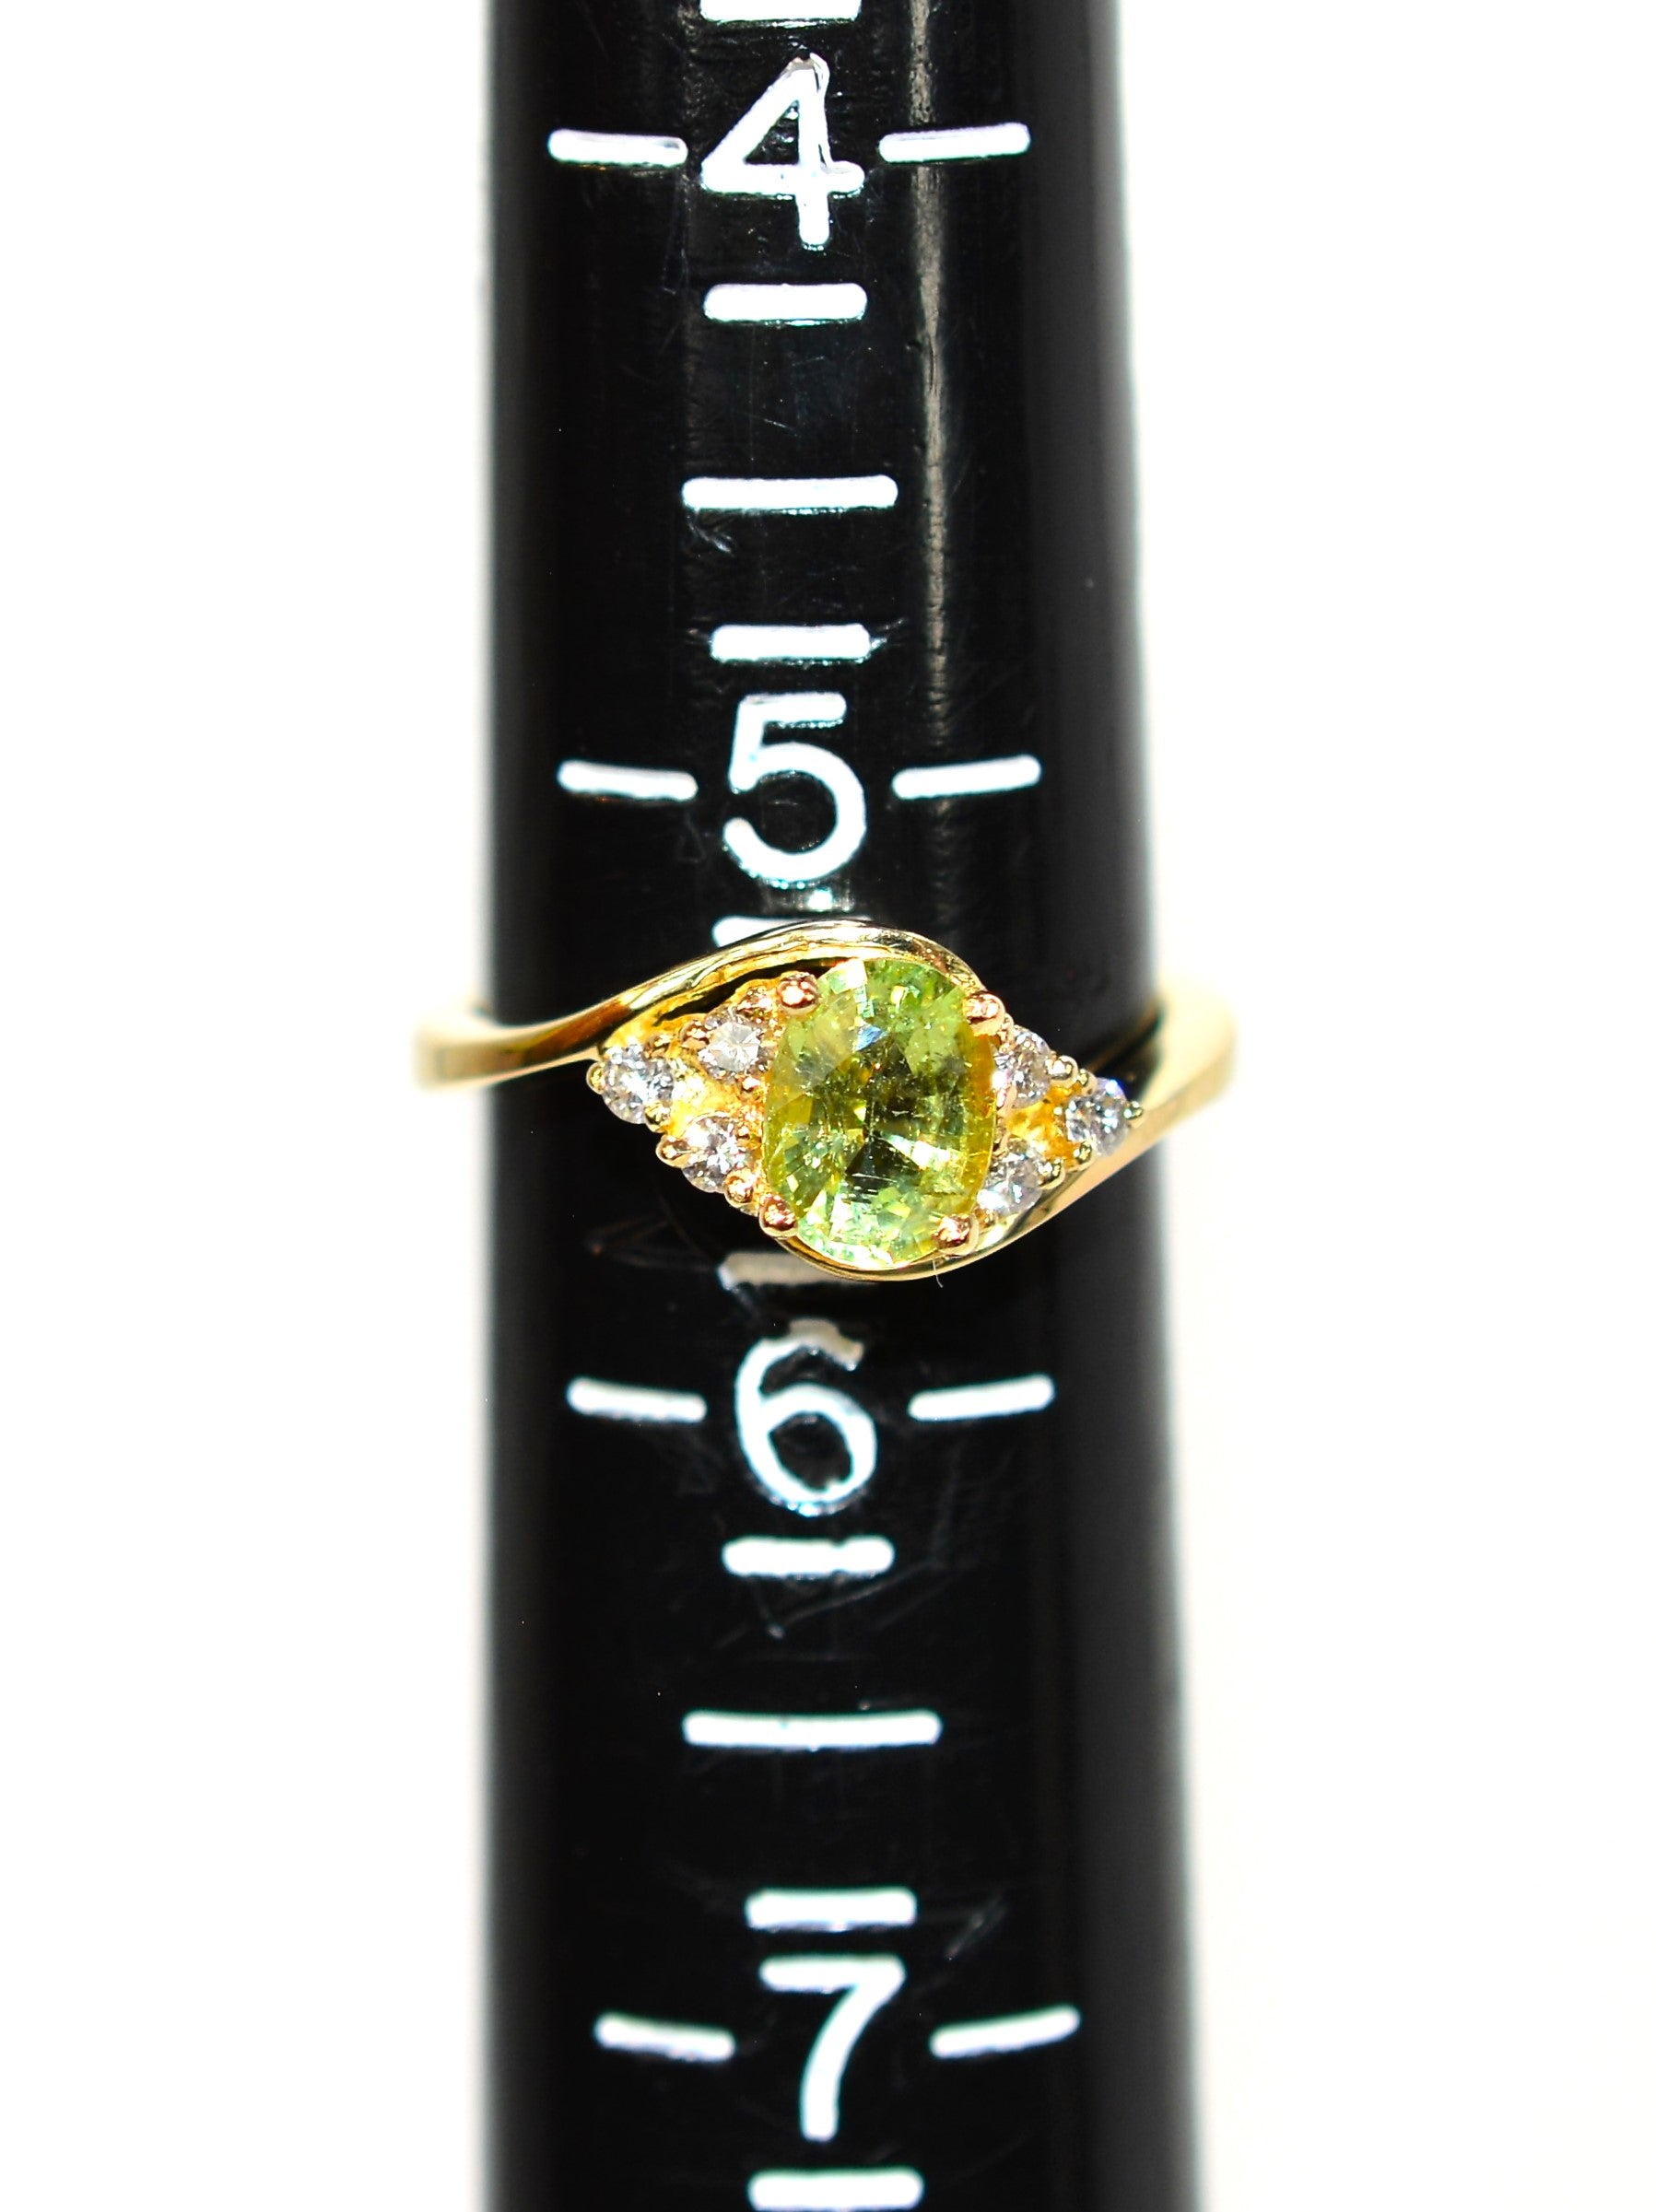 Natural Paraiba Tourmaline & Diamond Ring 14K Solid Gold .97tcw Gemstone Ring Birthstone Ring Green Ring Promise Ring Statement Ring Estate